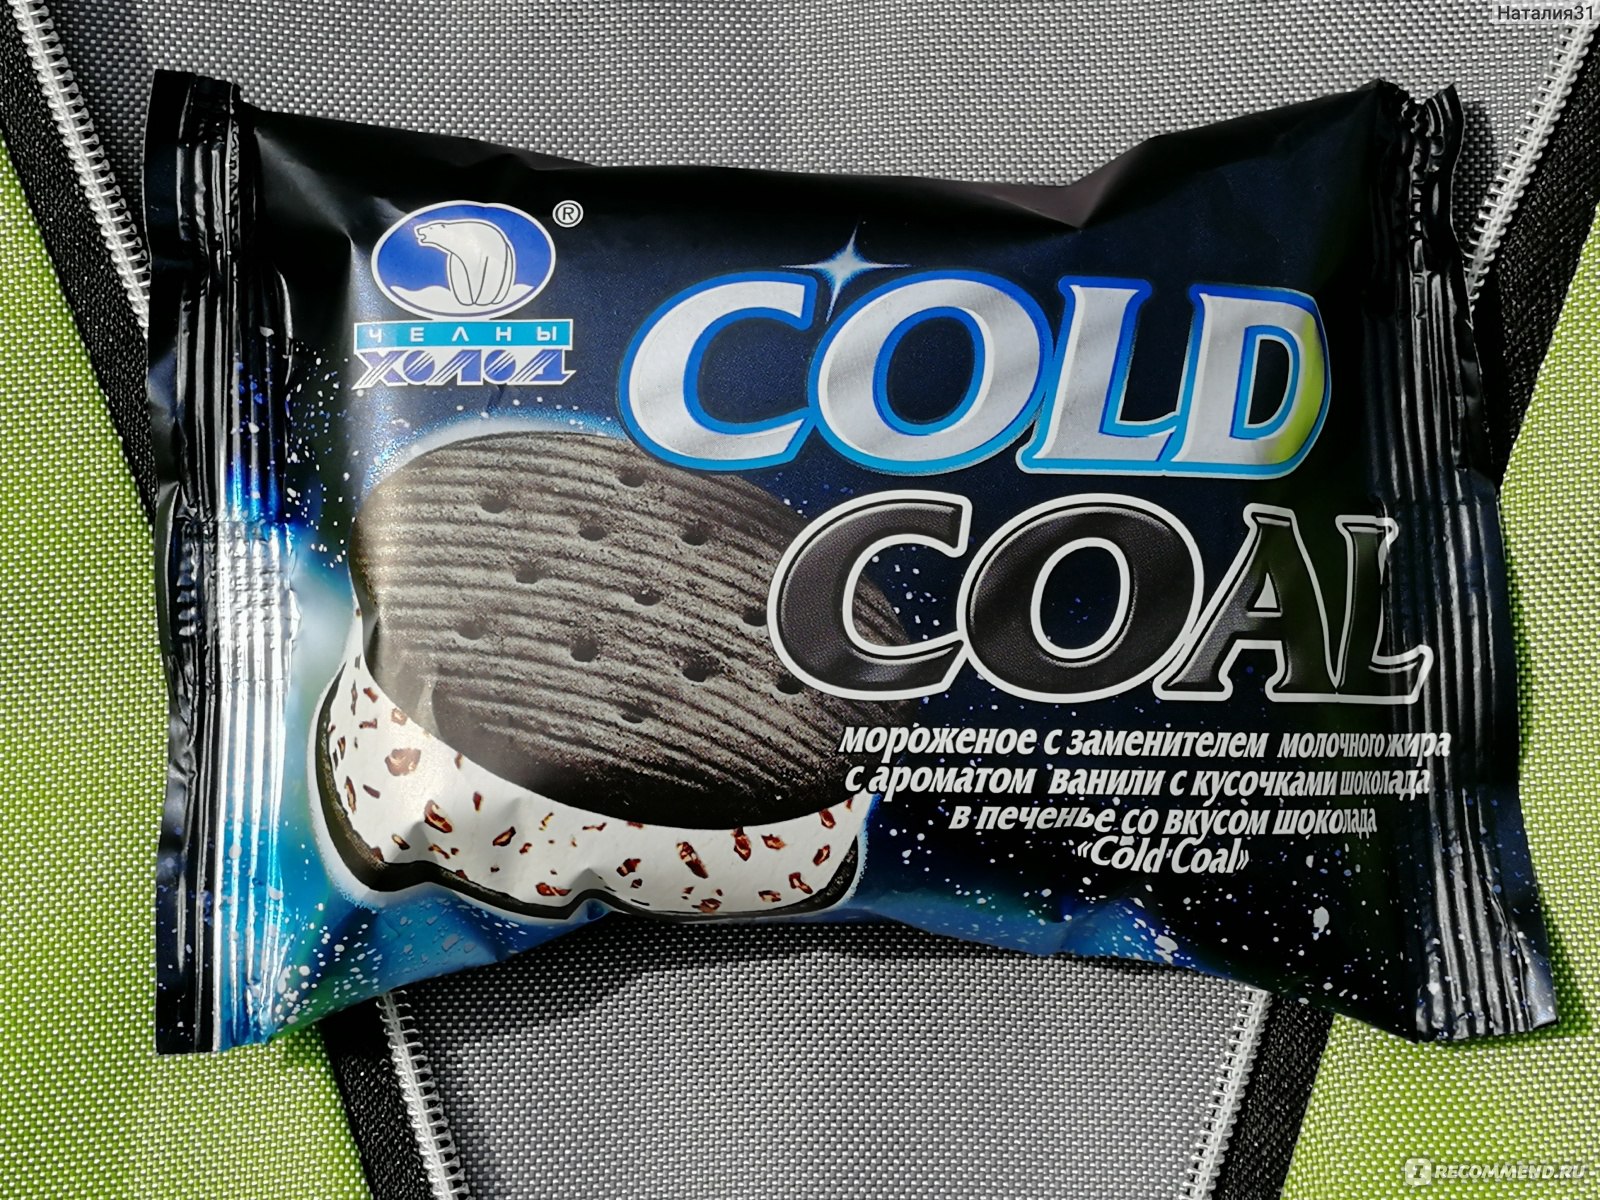 H cold. Мороженое Cold Coal. Черное мороженое Челны холод. Мороженое Cold Coal в печенье, 80г. Мороженое сэндвич Челны холод.